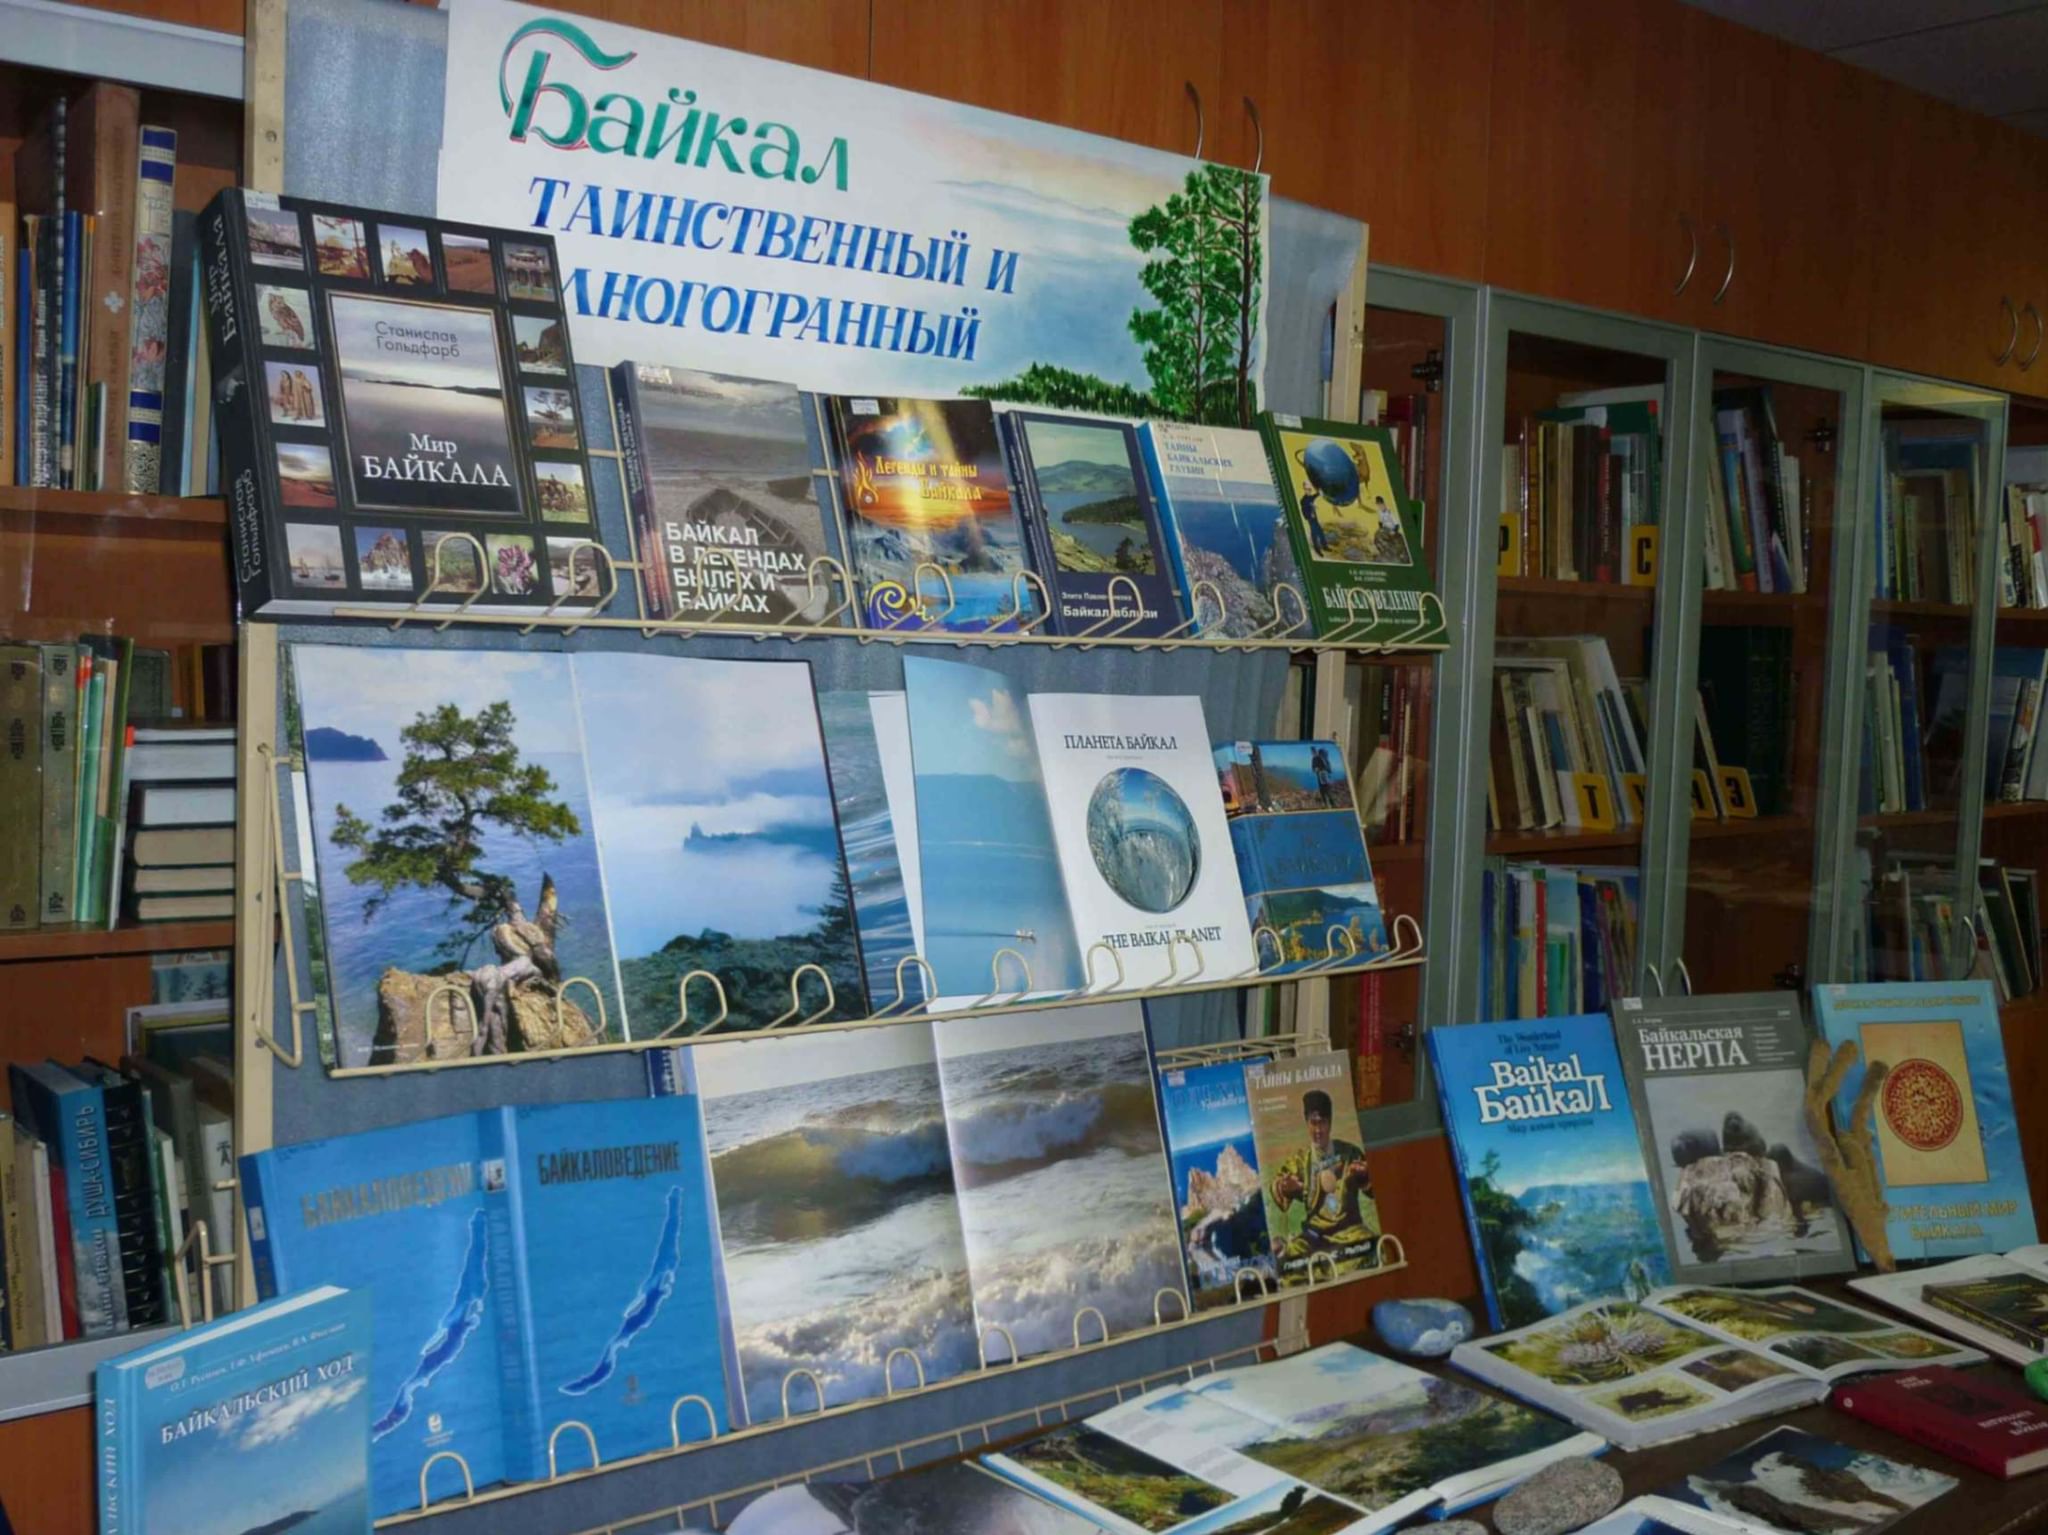 Выставка Байкал